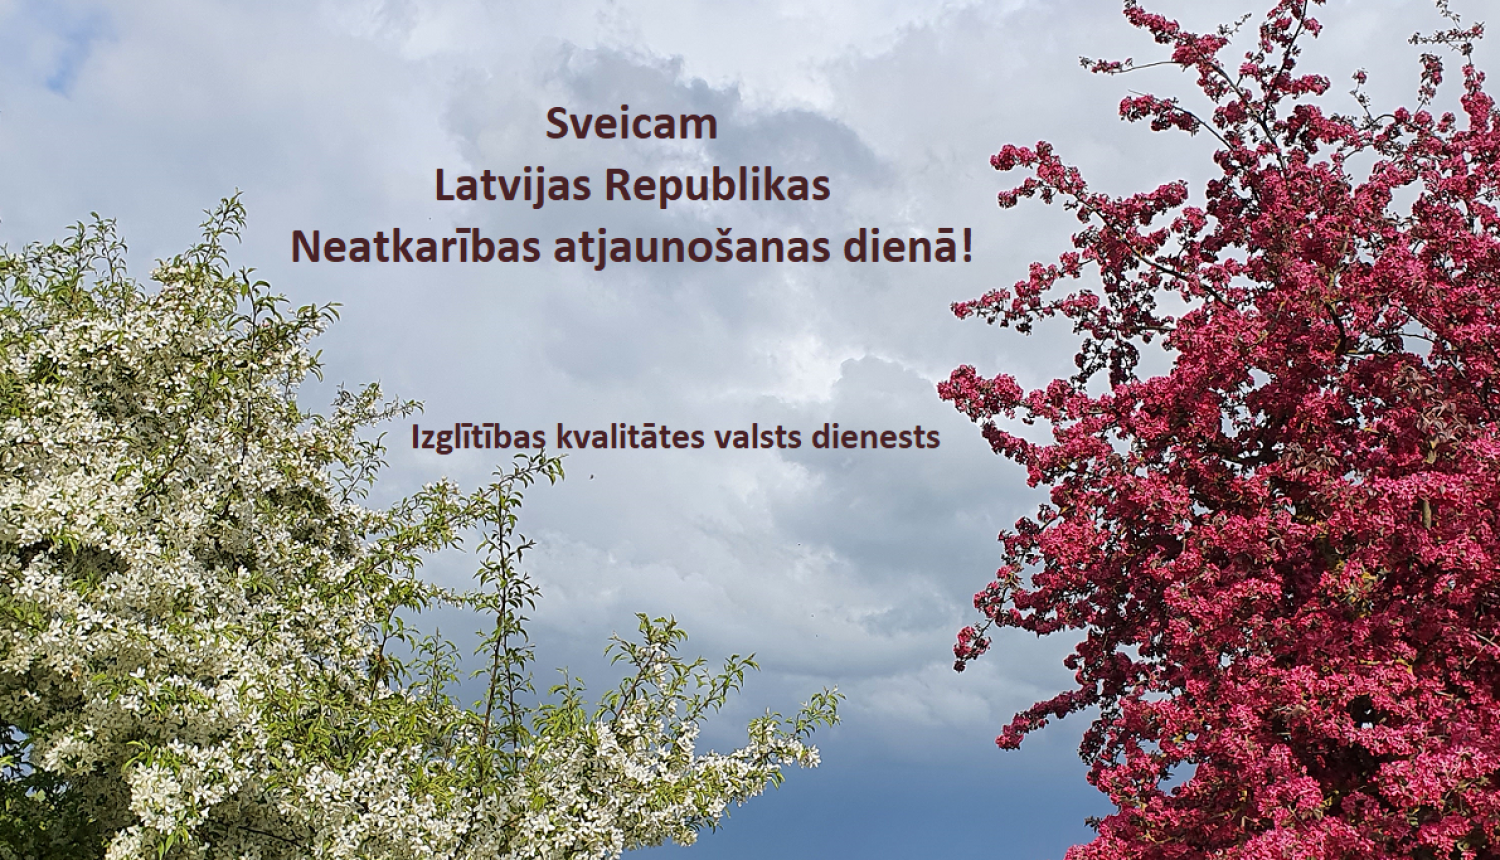 Izglītības kvalitātes valsts dienests sveic Latvijas Republikas Neatkarības atjaunošanas dienā